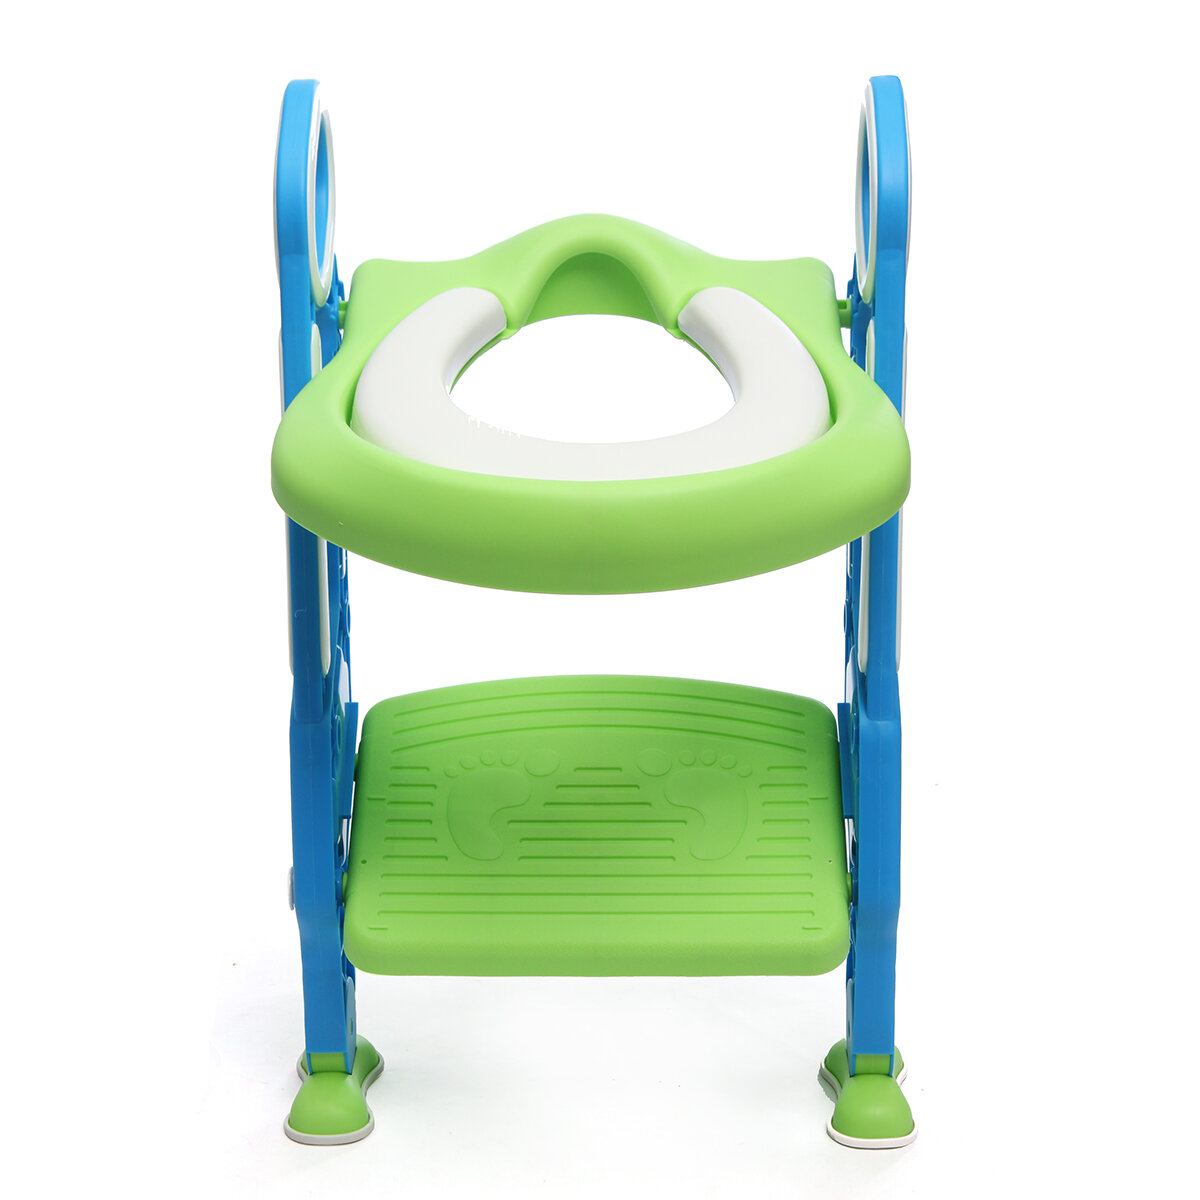 Kinderzindelijkheidstrainingstoilet Soft Padladder Potje-zitje Stoel Opstapje Veiligheidstoilet Trainer voor kinderen